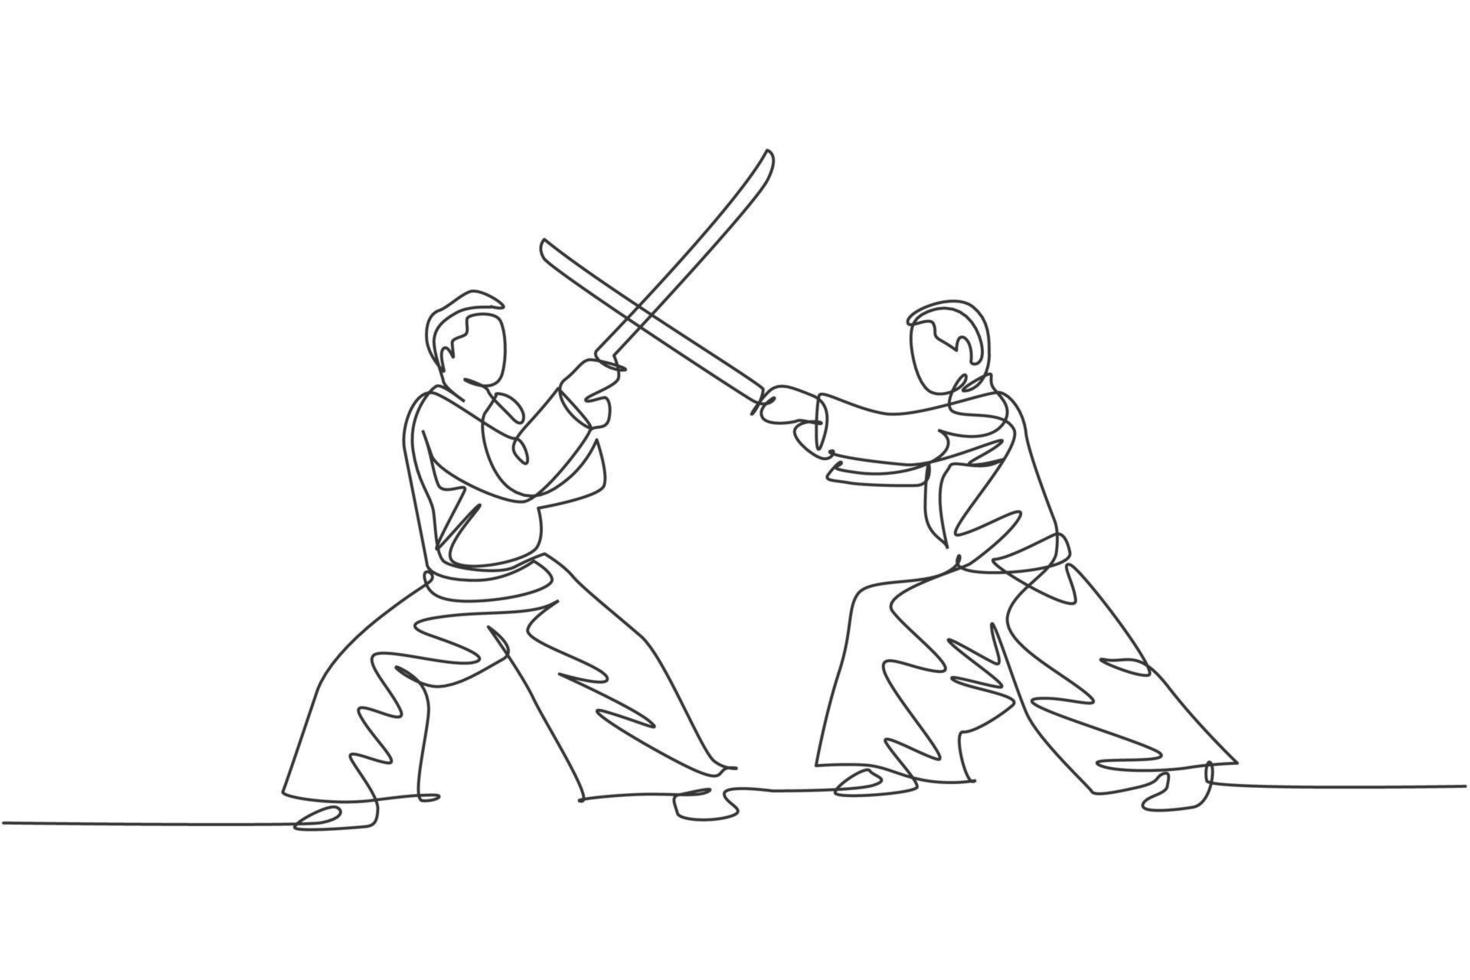 een enkele lijntekening van jonge energieke man met kimono oefening aikido strijd met houten zwaard in sporthal vectorillustratie. gezonde levensstijl sport concept. ononderbroken lijntekening ontwerp vector